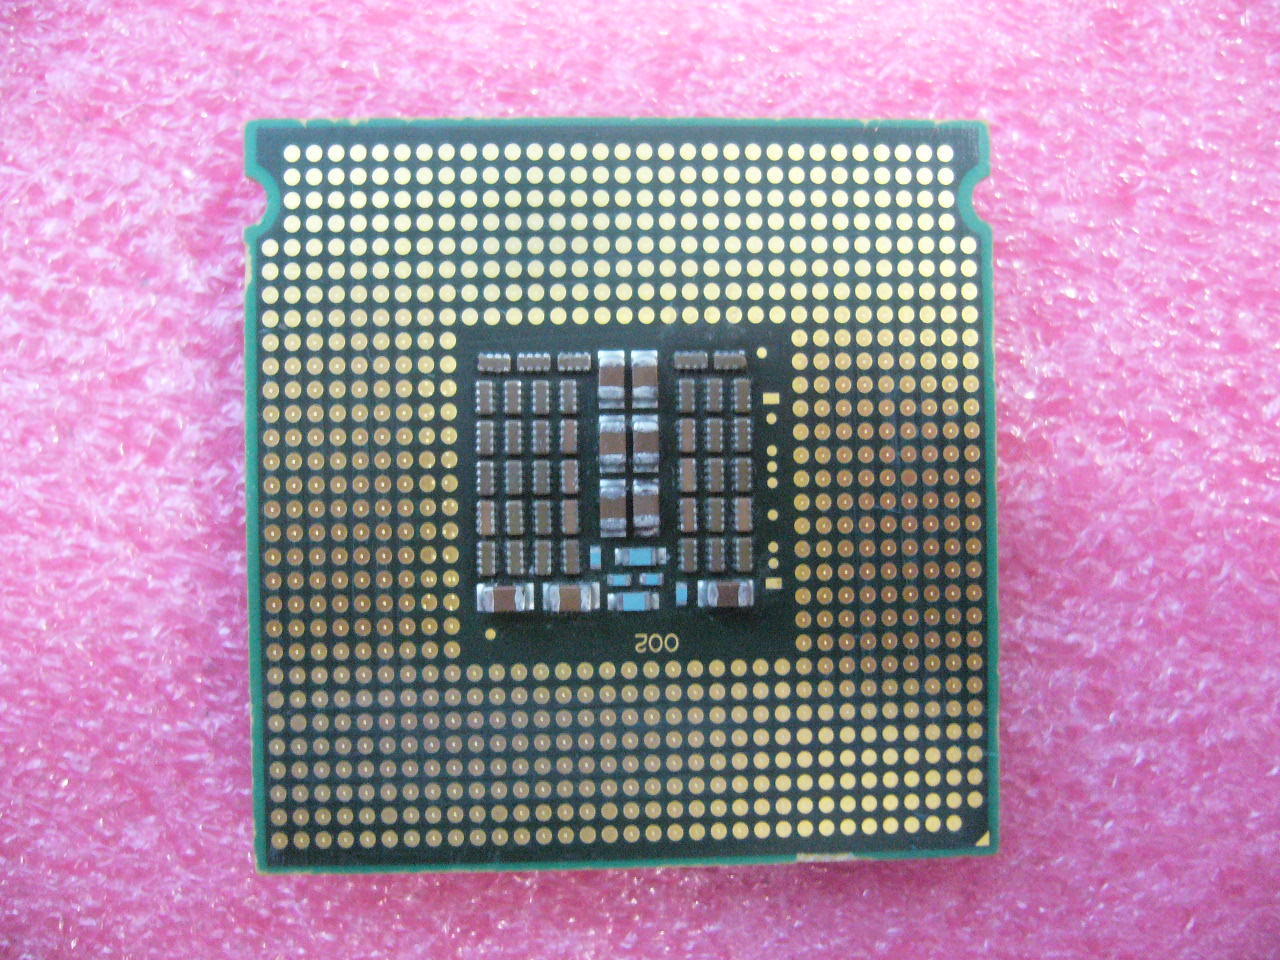 QTY 1x Intel Xeon CPU Quad Core X5460 3.16Ghz/12MB/1333Mhz LGA771 SLBBA - zum Schließen ins Bild klicken